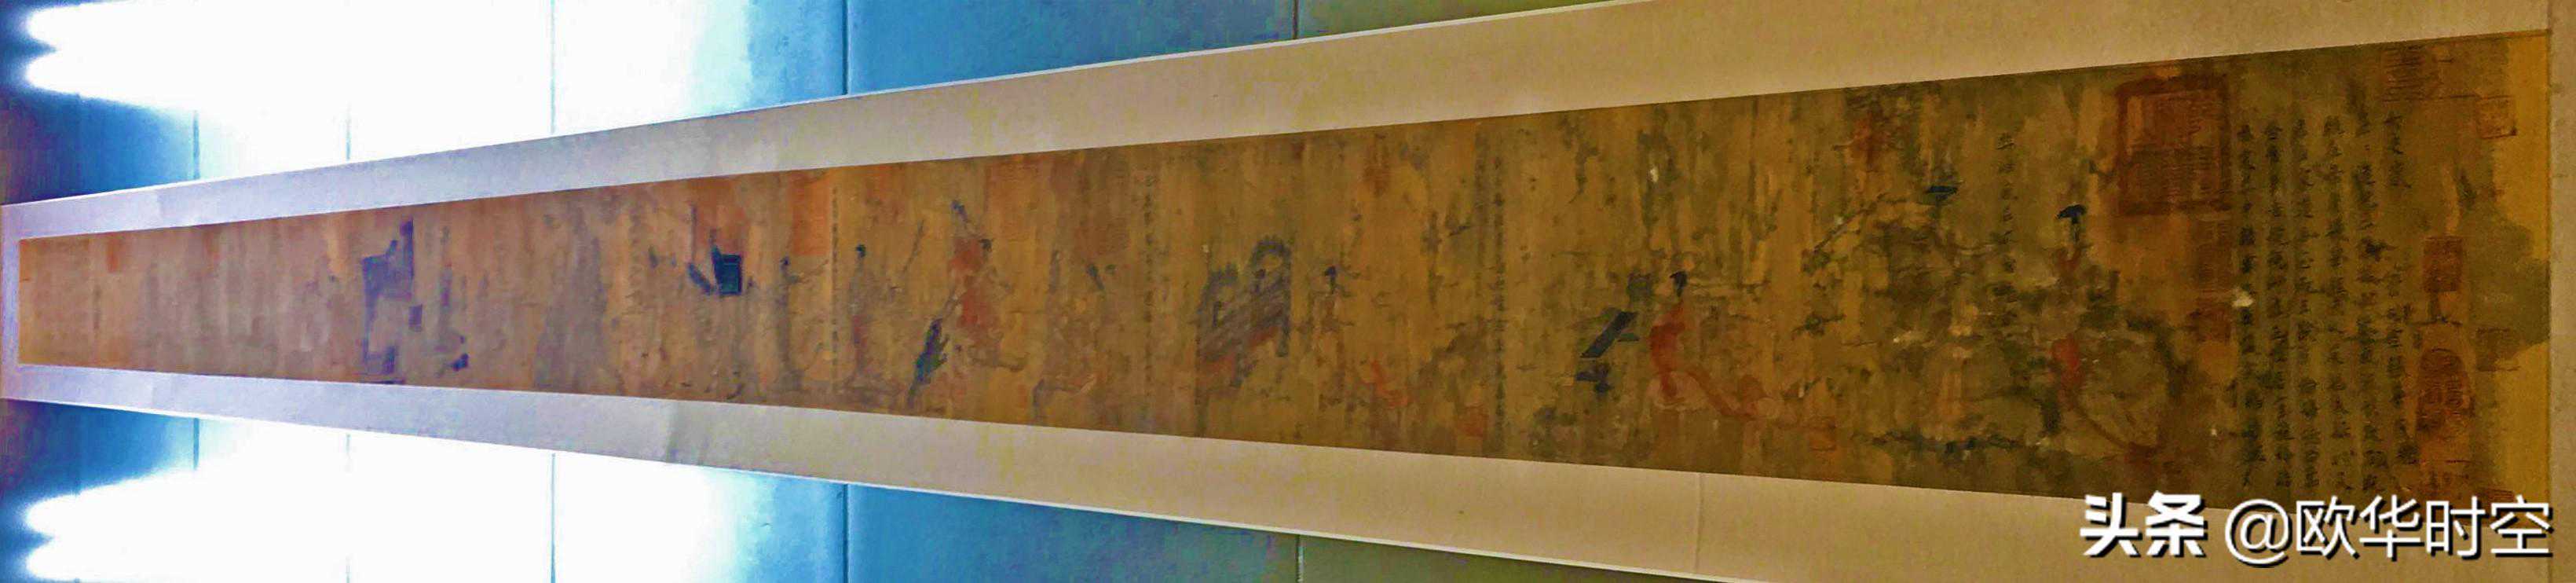 张惠榕手摹《女史箴图》世界唯一一幅有色12段完整版呈现世人